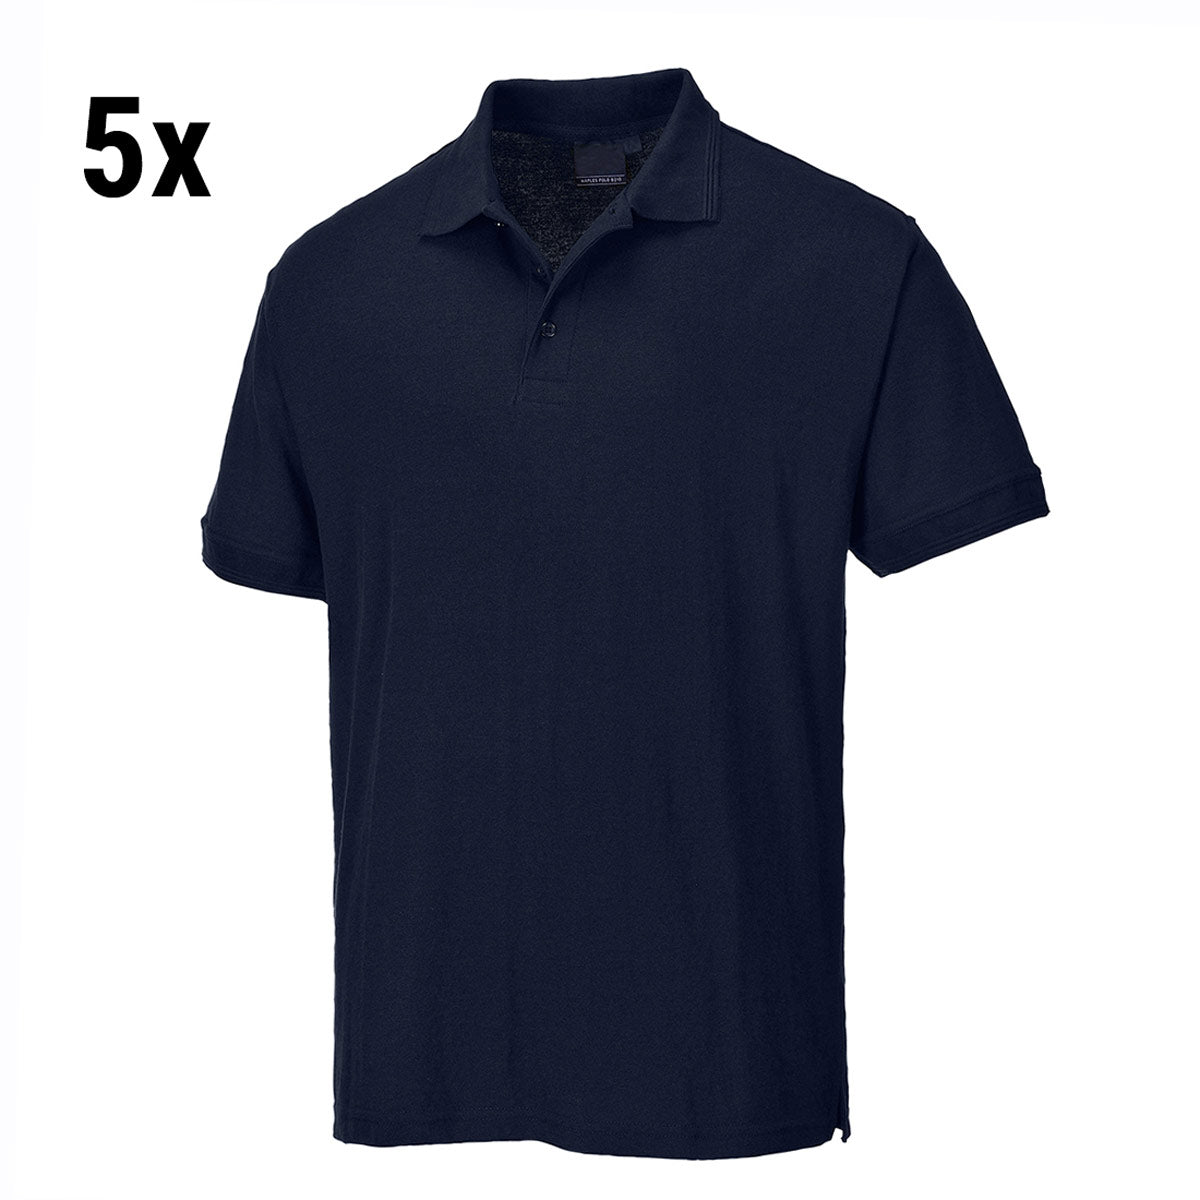 (5 stk.) Polo shirt til mænd - mørk marineblå - Størrelse: 3XL